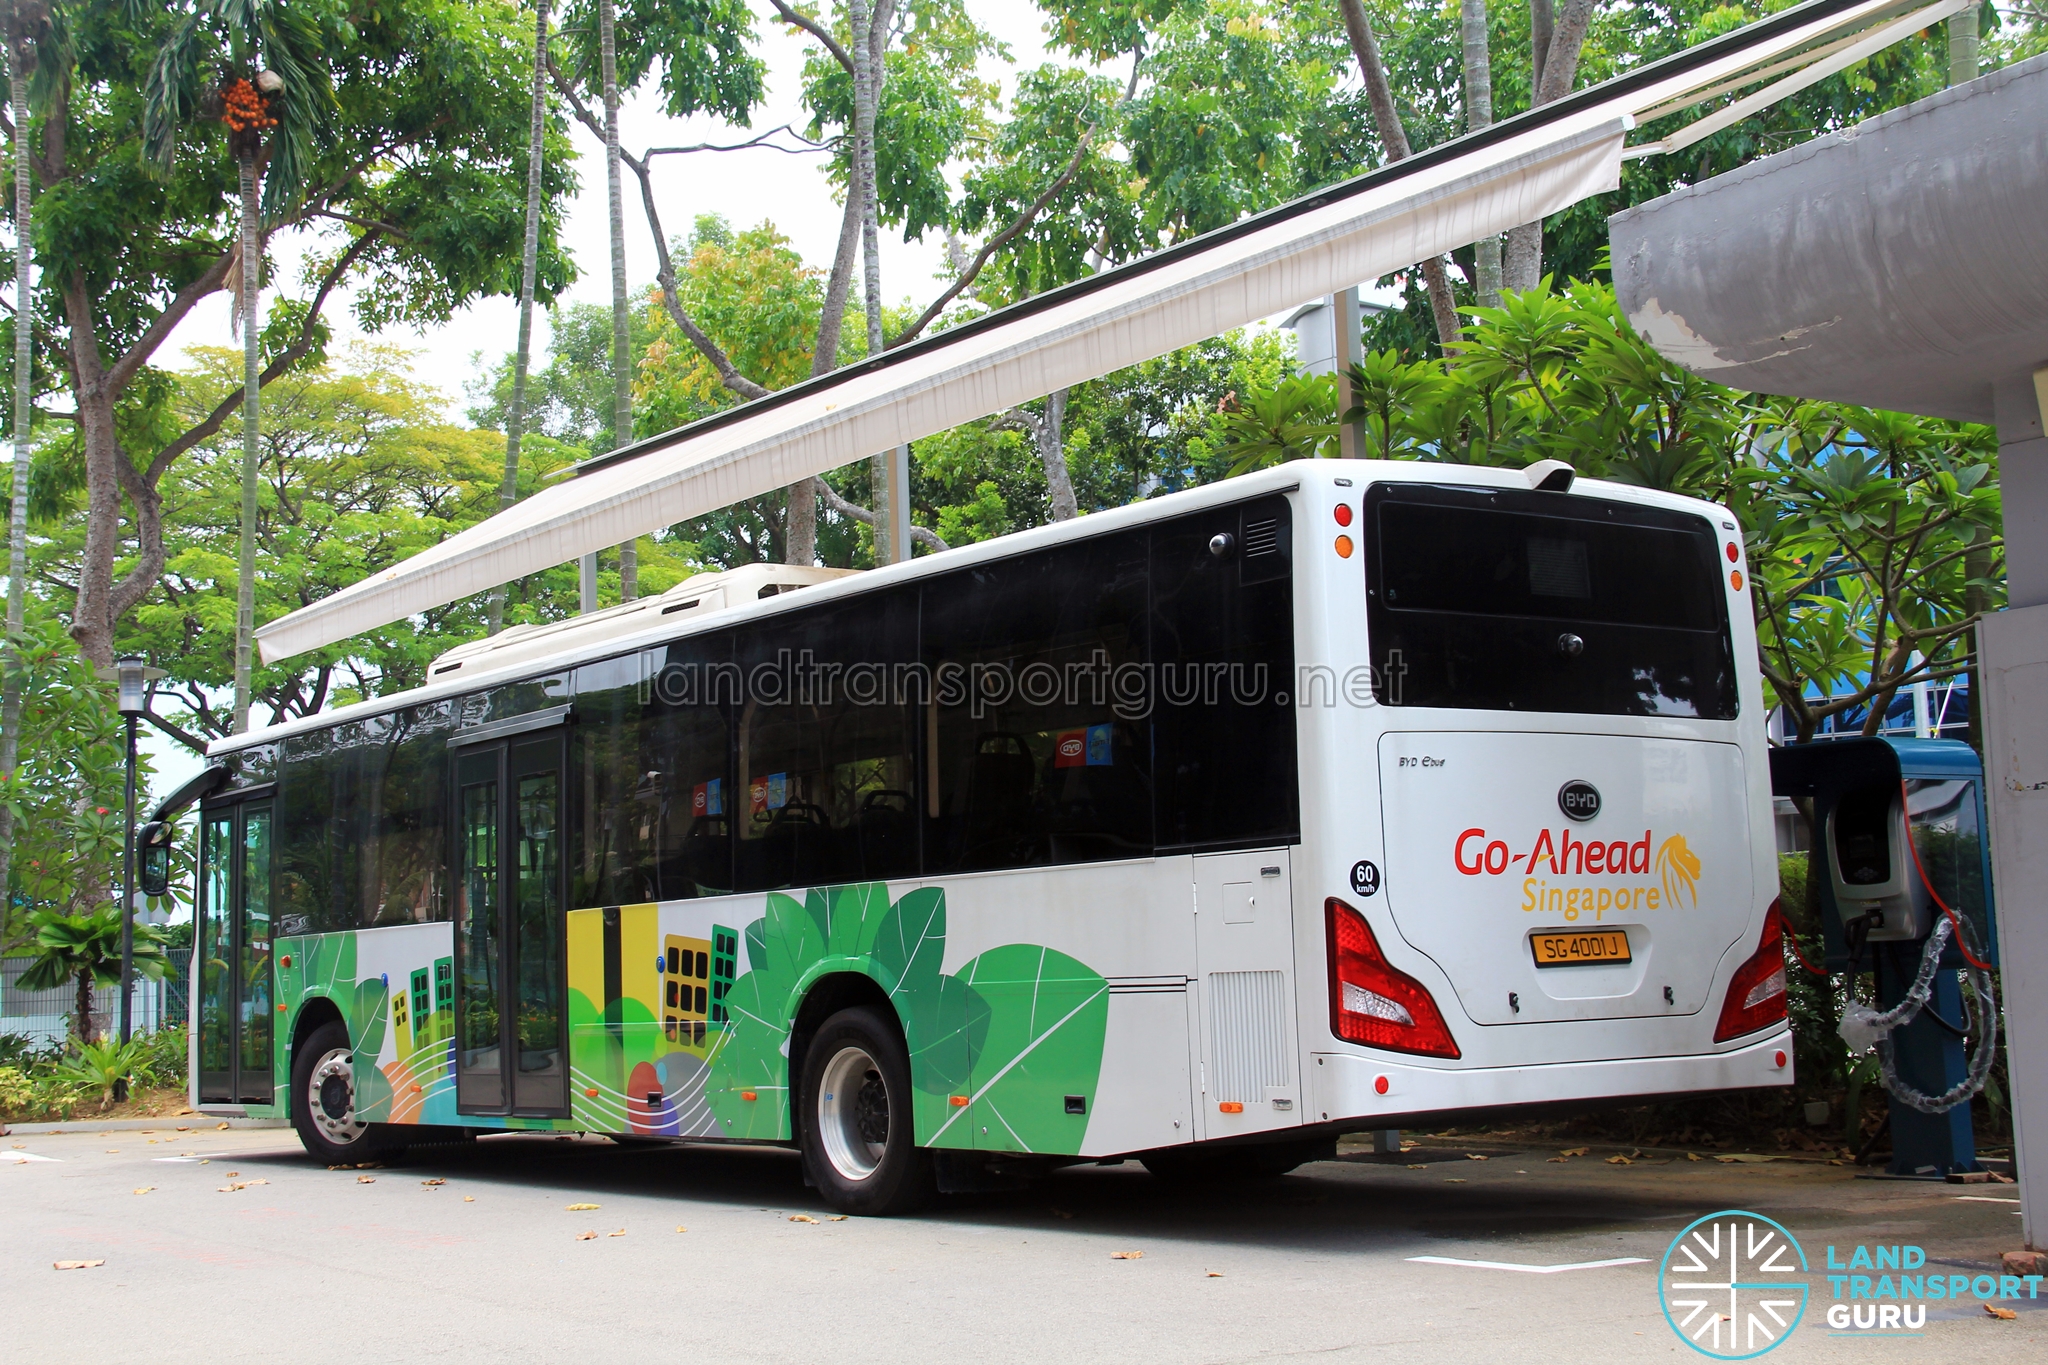 SBS Transit Bus Service 124 | Land Transport Guru